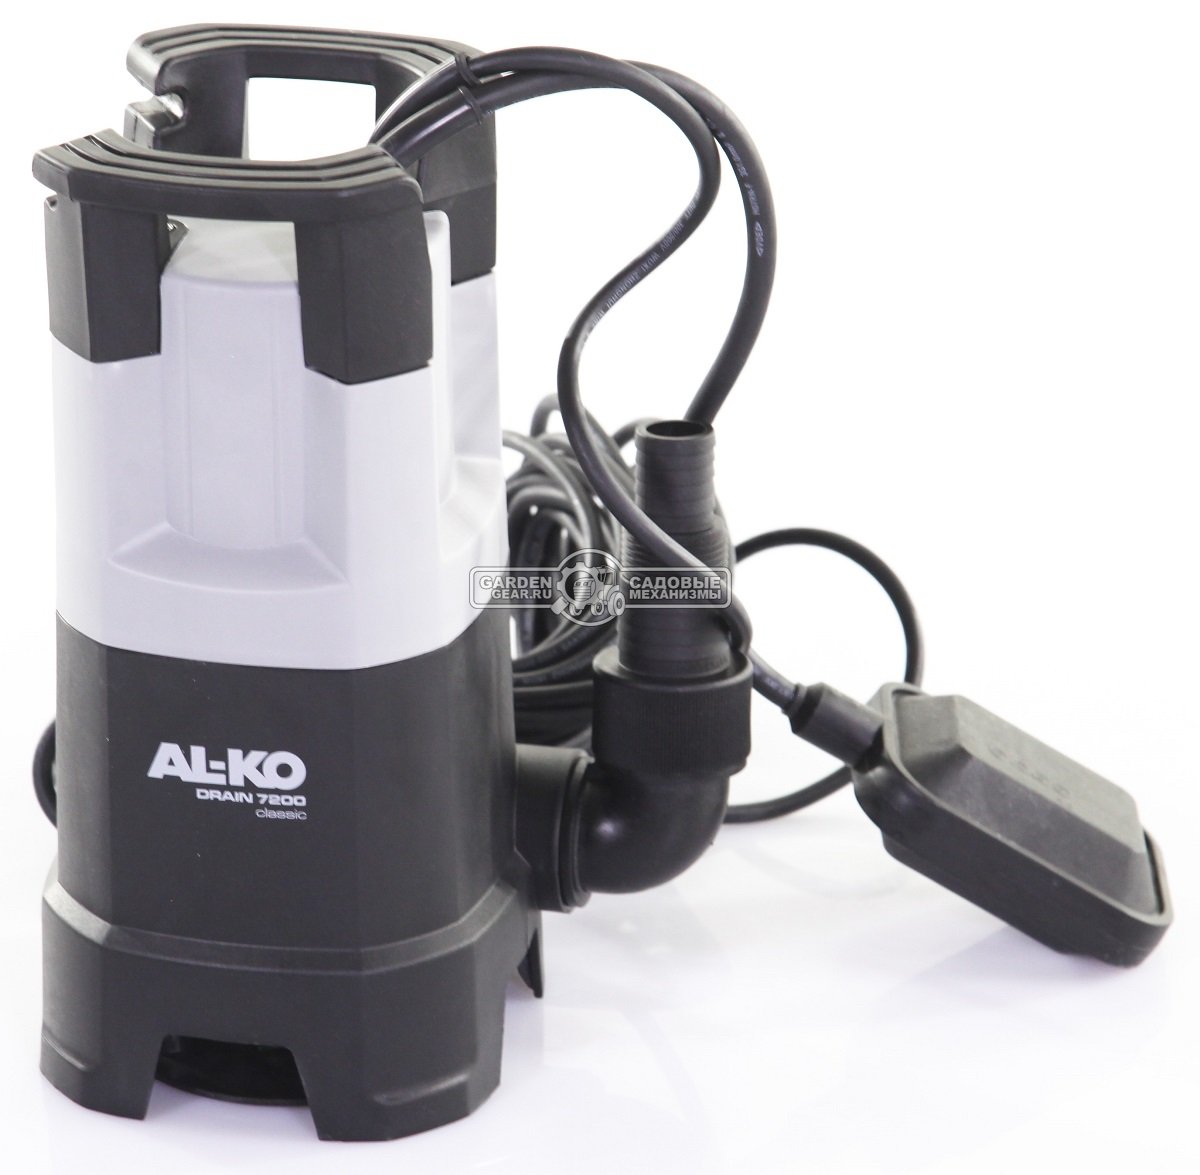 Дренажный насос Al-ko Drain 7200 Classic для грязной воды (PRC, 430 Вт., 6 м, 7200 м3/час, 4,4 кг.)